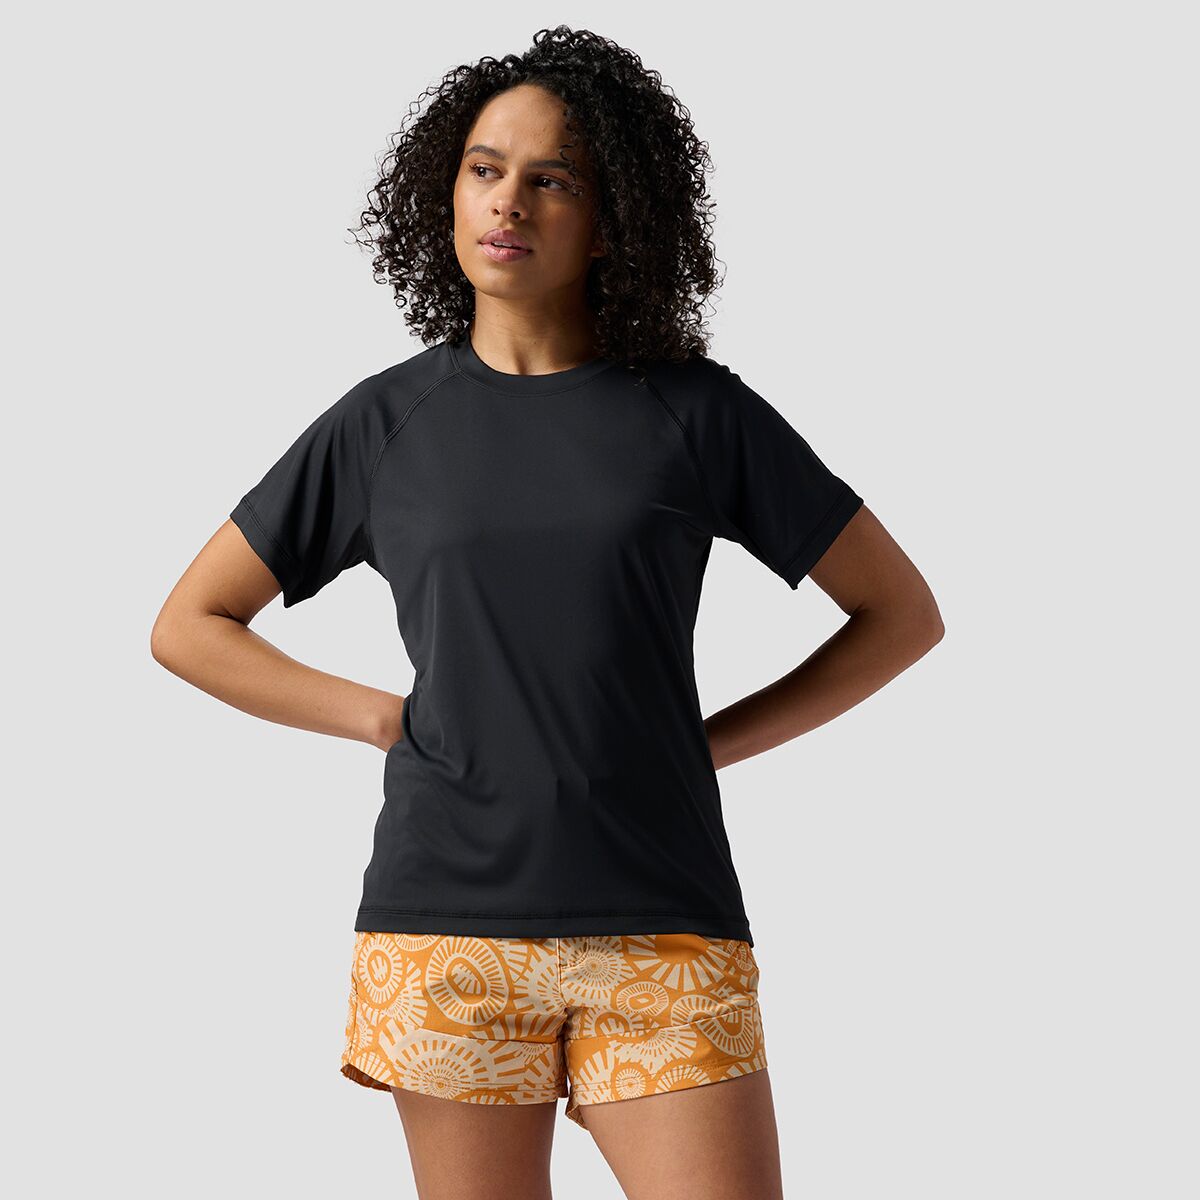 Stoic Short-Sleeve Tech T-Shirt - Women's